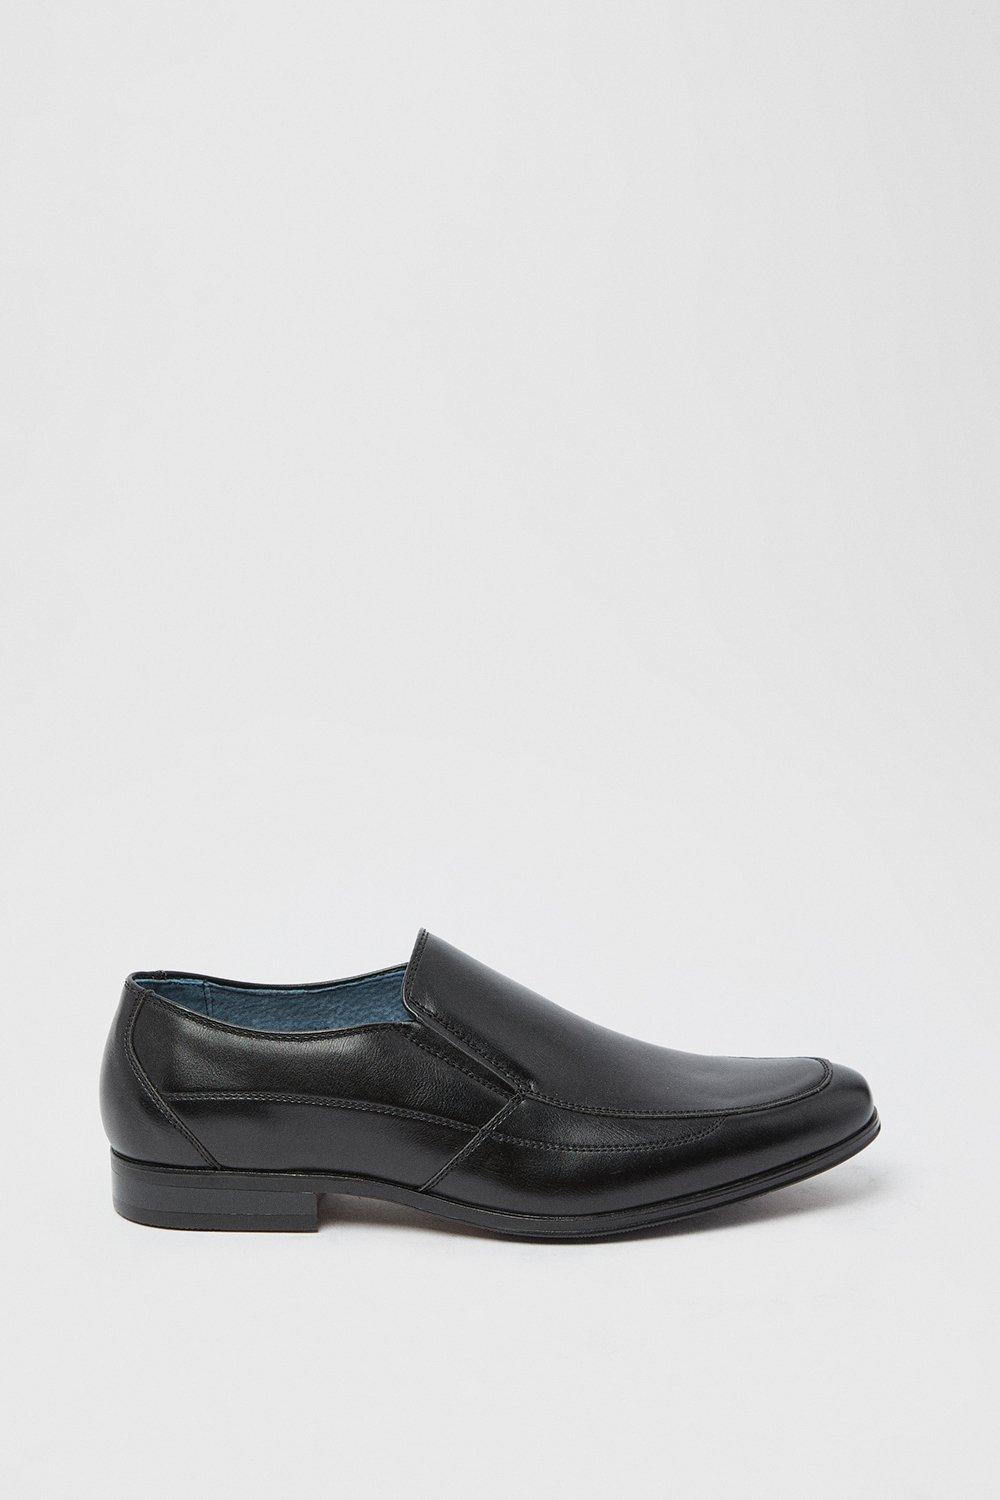 Деловые туфли без шнуровки Benji Essentials Burton, черный туфли без шнуровки из термопластика сезонный камуфляж crocs серый